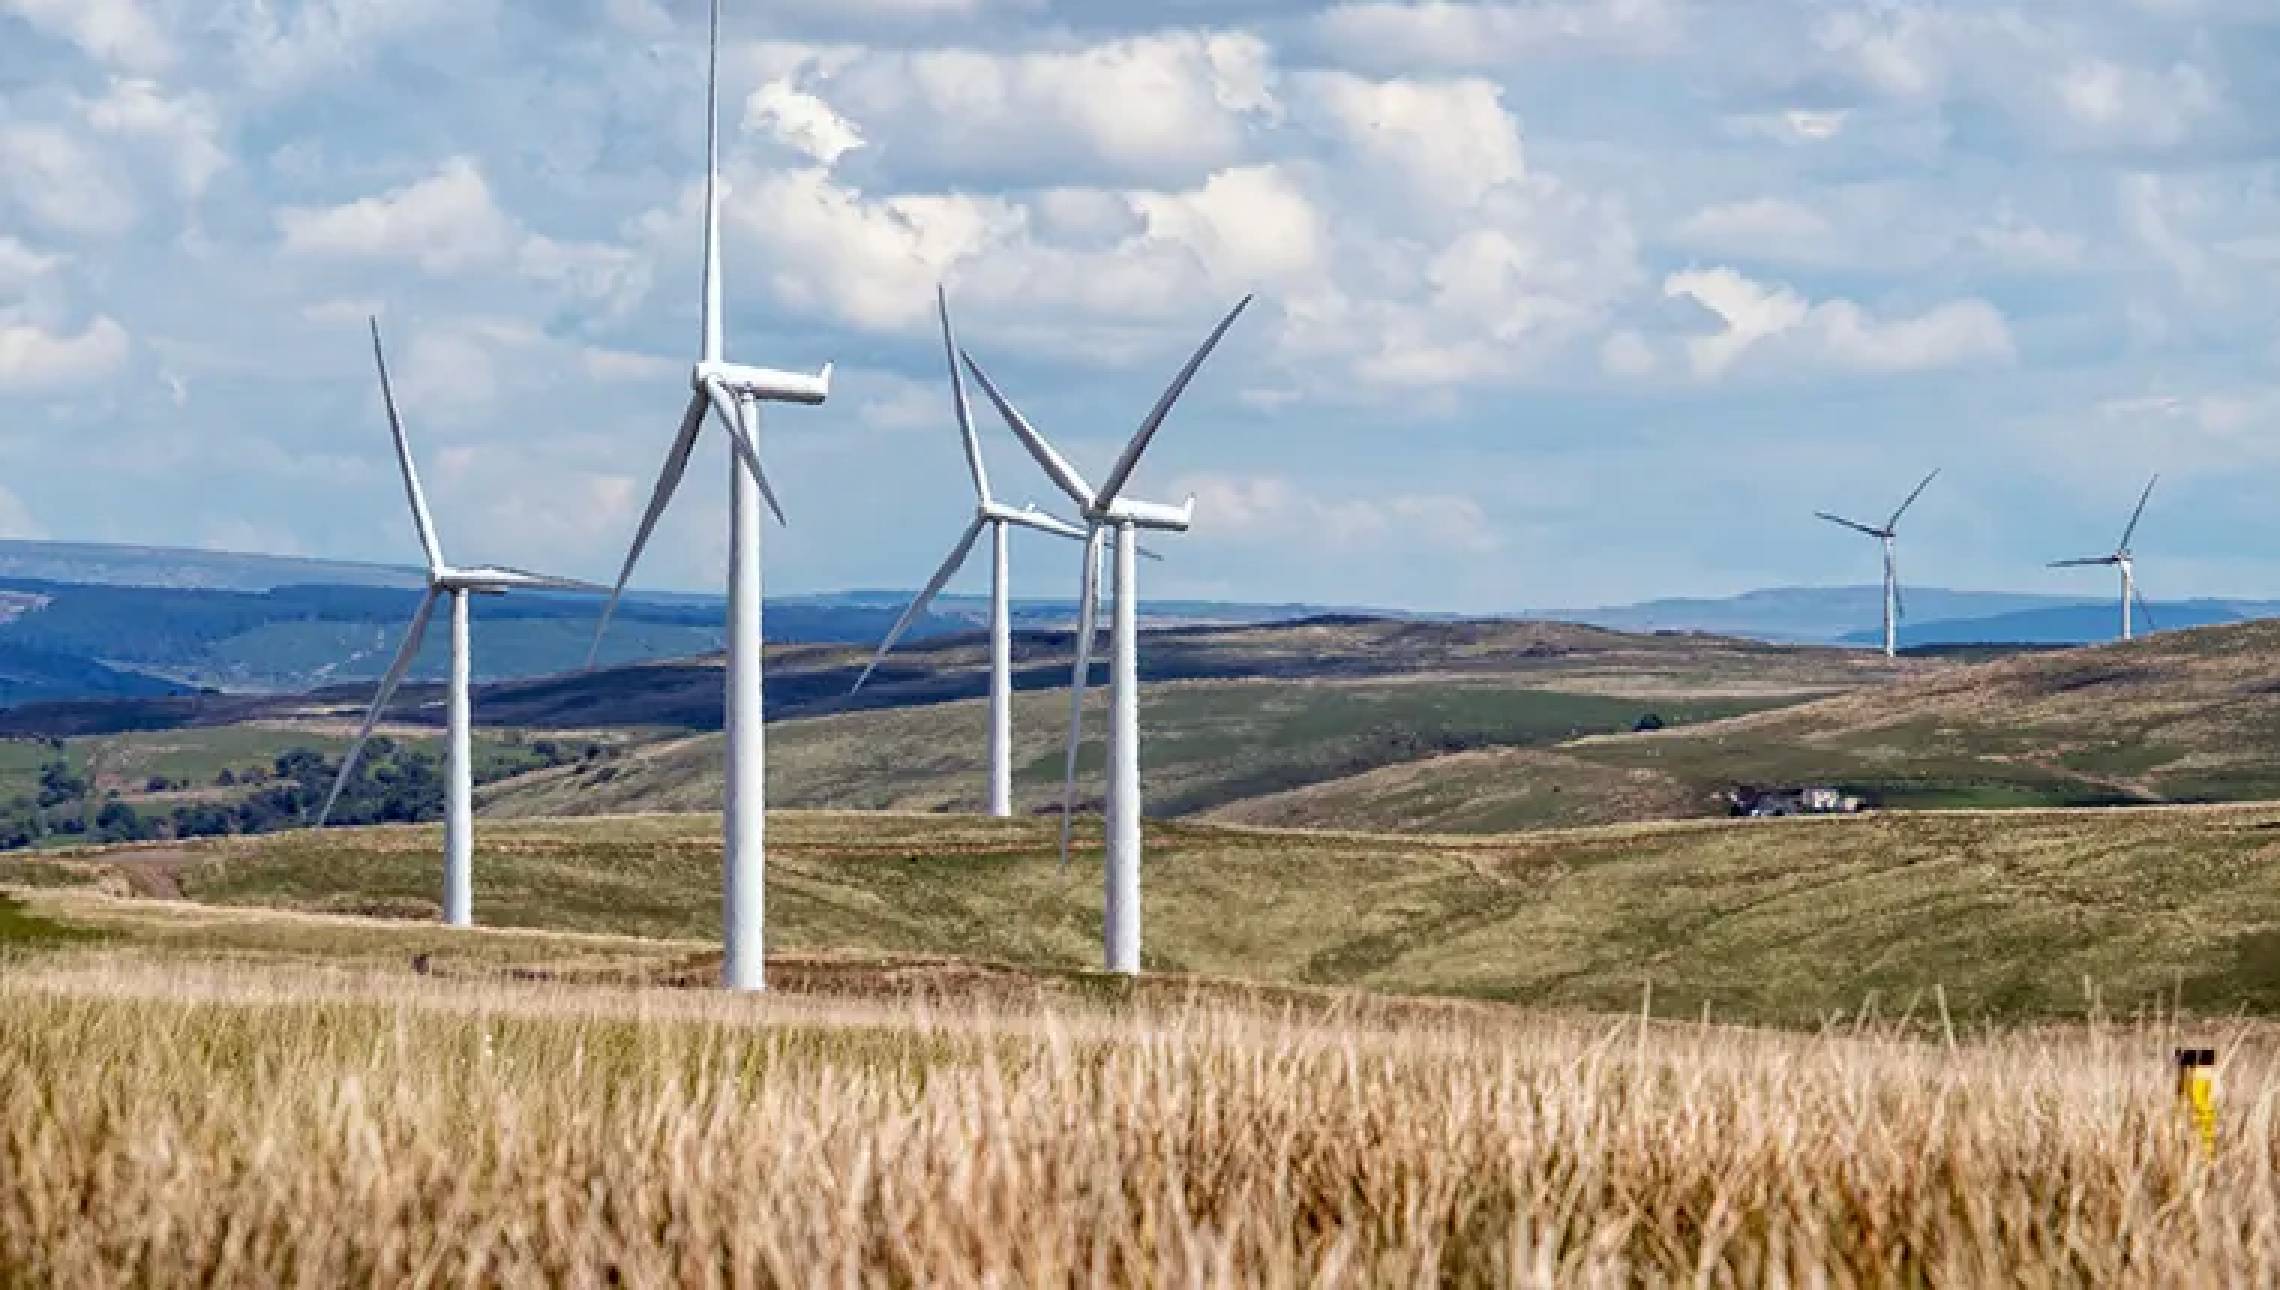 România exporta luni dimineață aproape 1.000 de MW de electricitate, în contextul unei producții uriașe de energie eoliană